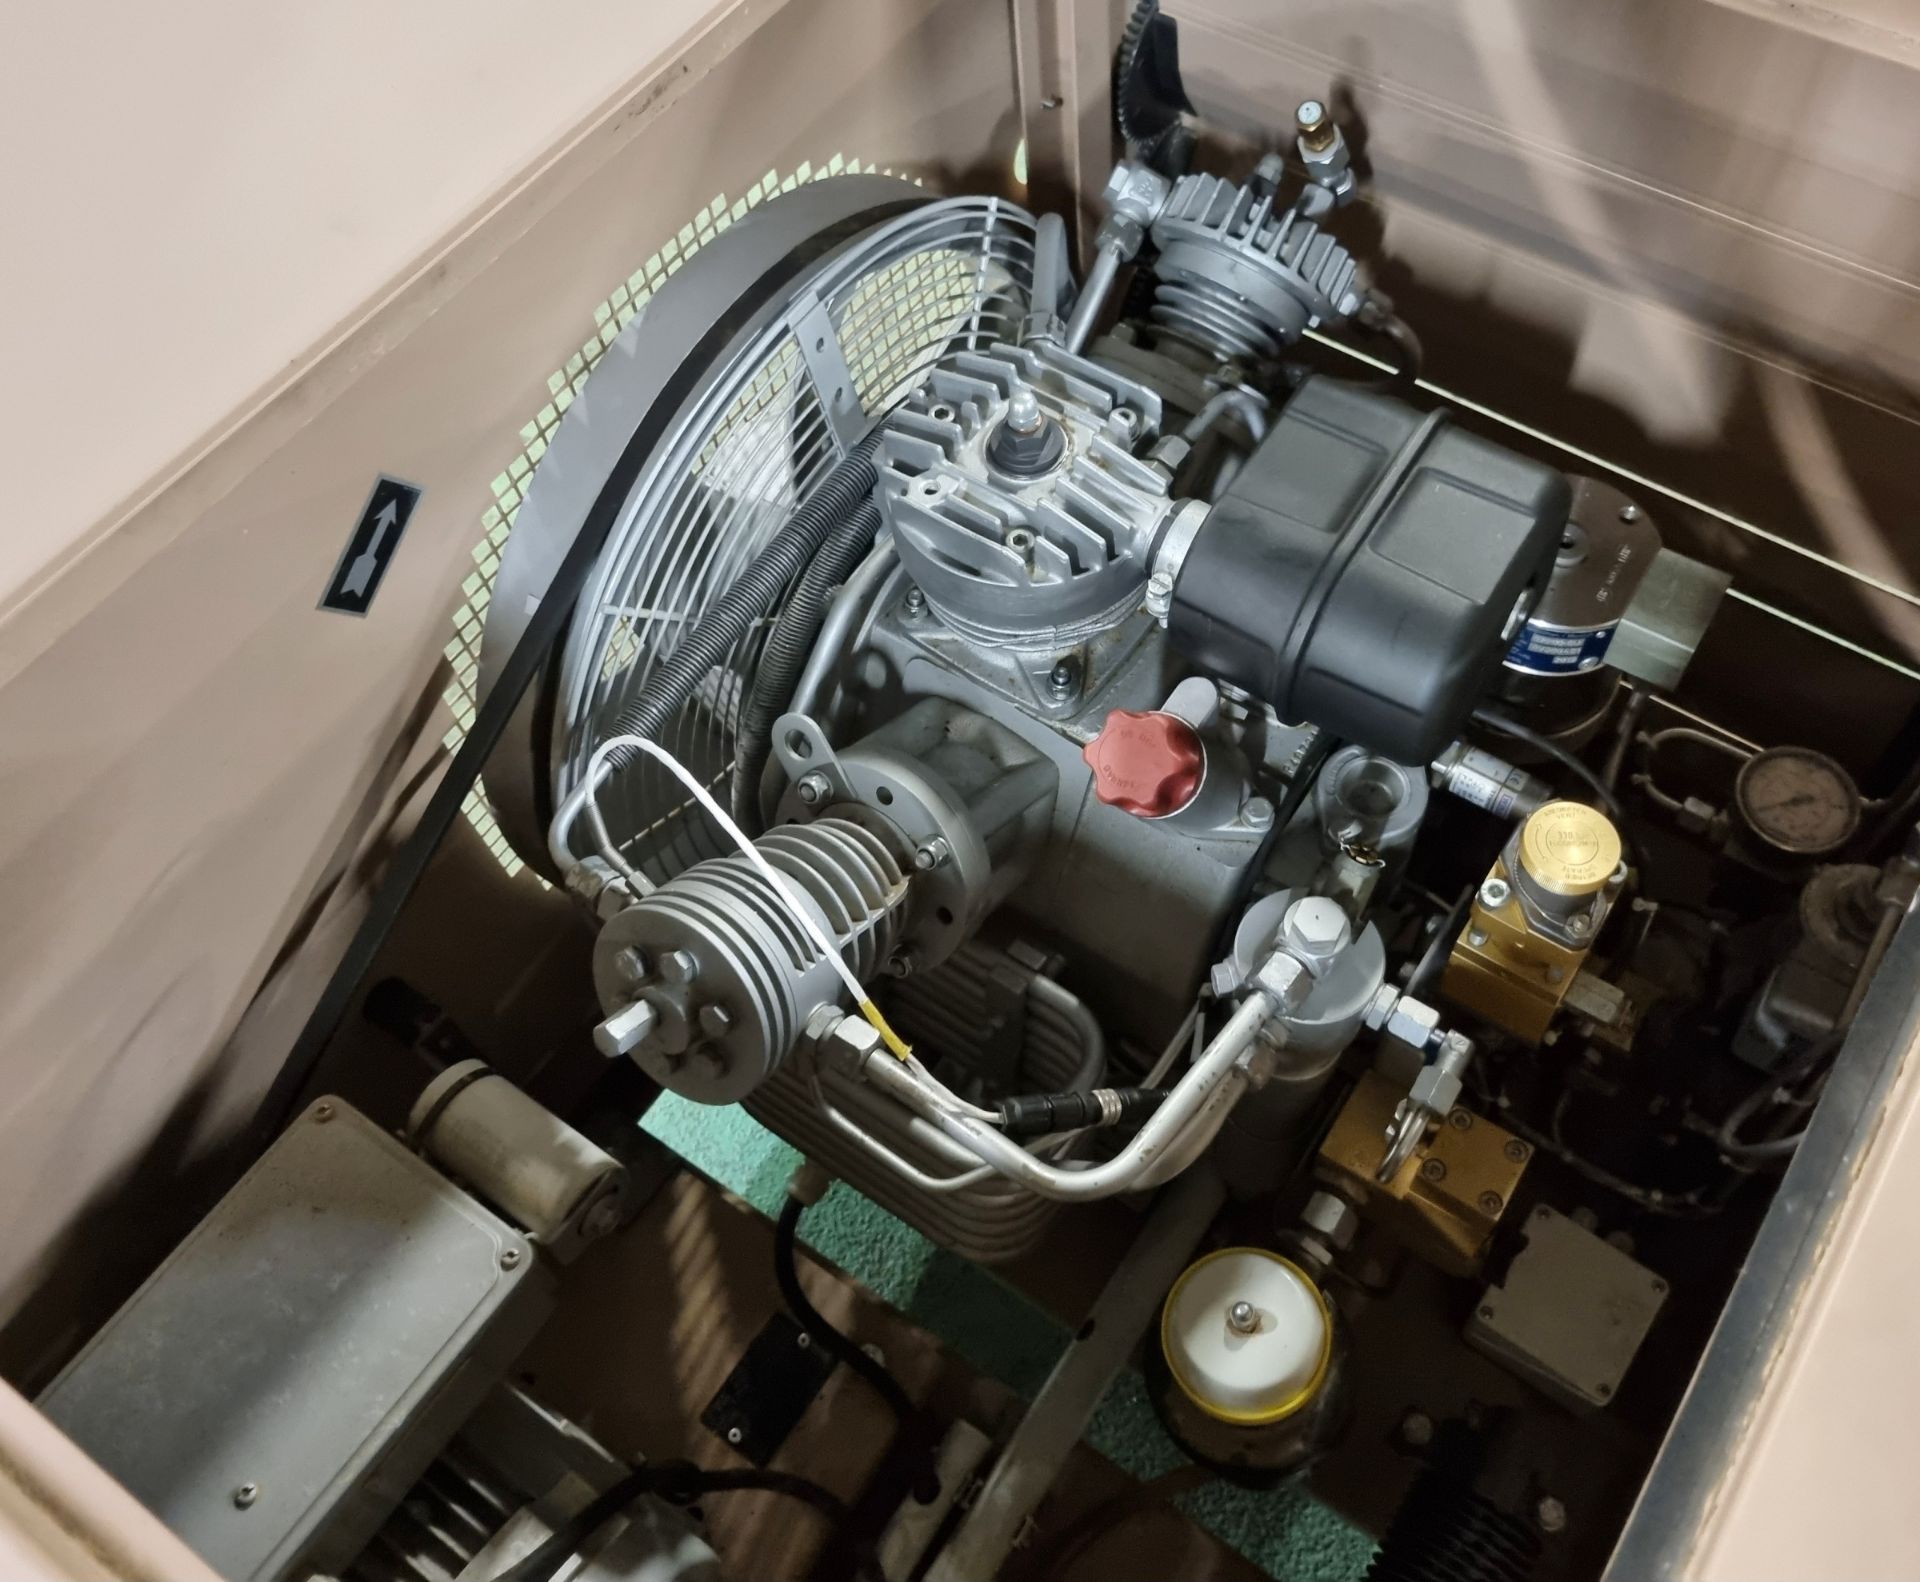 Bauer 100-2.2-H-M01 Compressor & Kompressoren CPF450-M01 cylinder refill system - Image 7 of 17